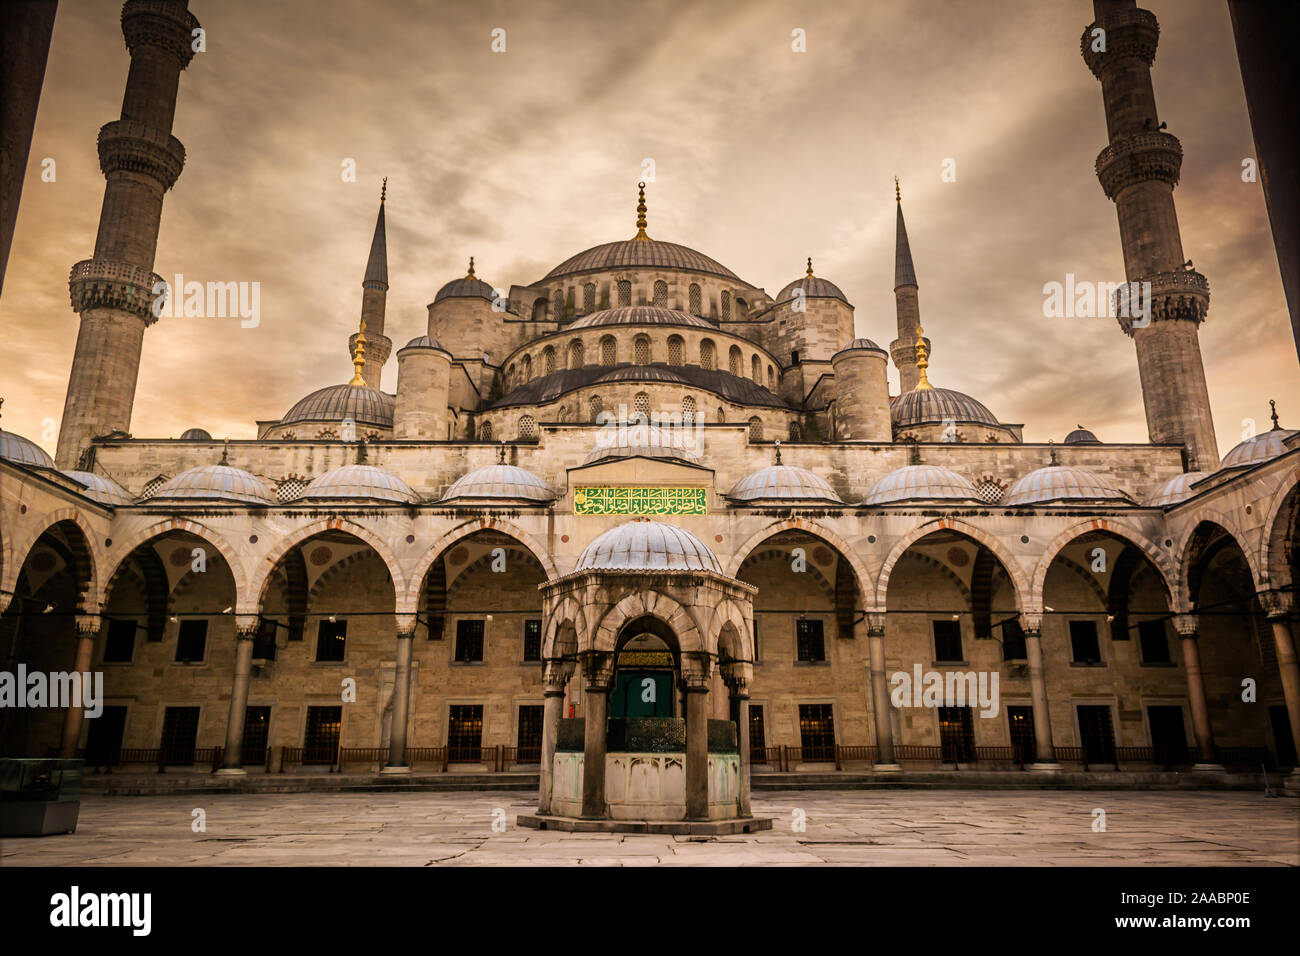 La moschea di Sultanahmet chiamato anche la Moschea Blu alley vista dall'interno e al di fuori di Istanbul, Turchia Foto Stock